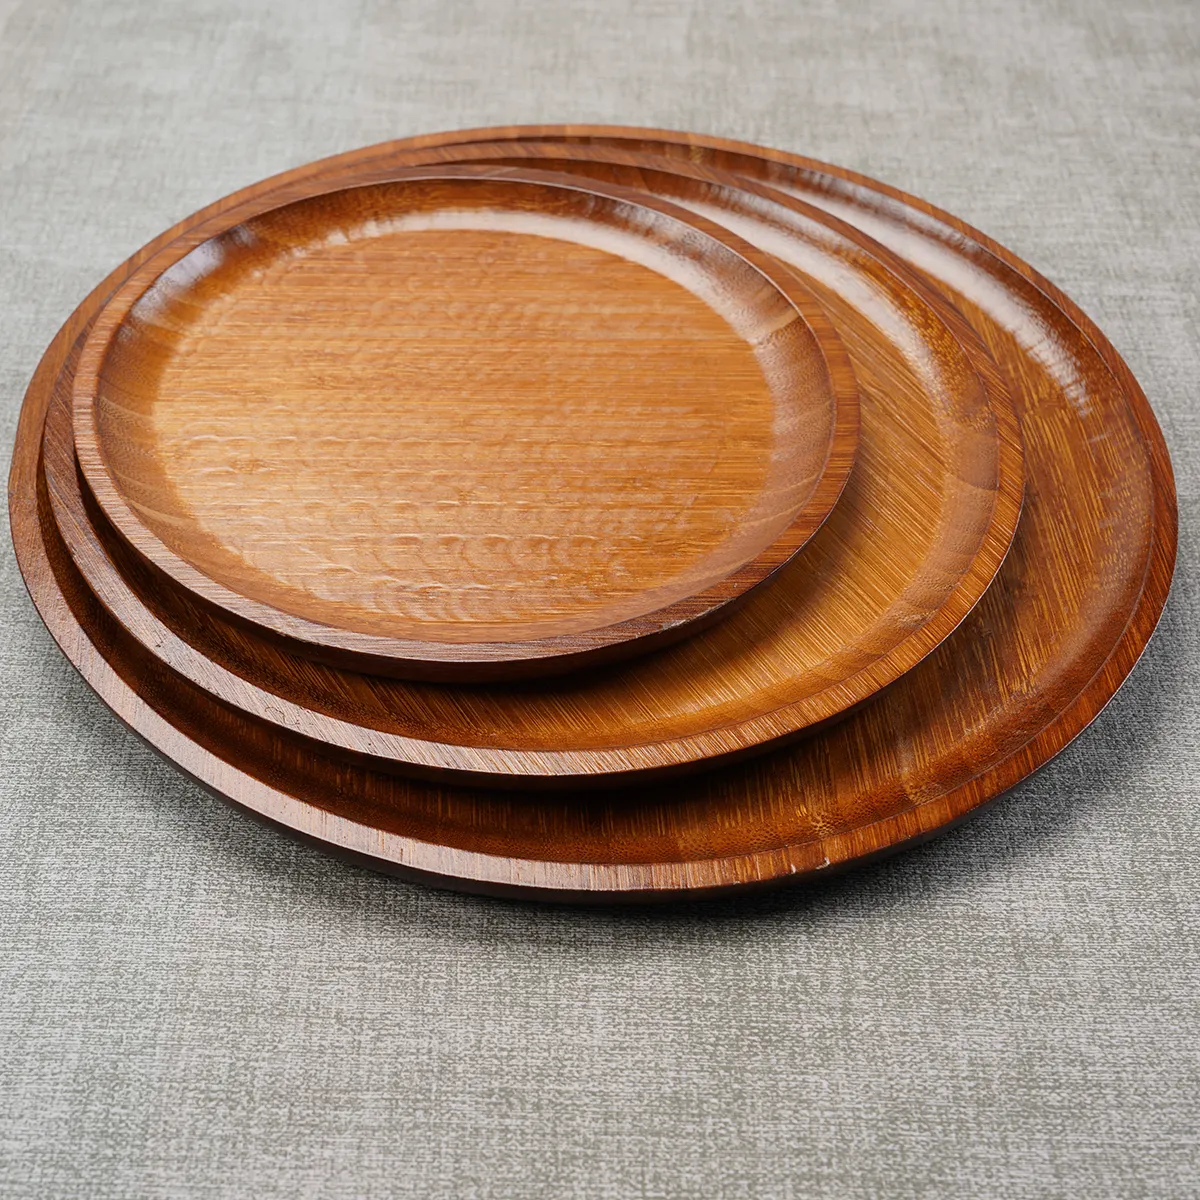 Plato de cena de madera de una sola capa para restaurante de cocina, bandeja redonda de bambú para servir desayuno